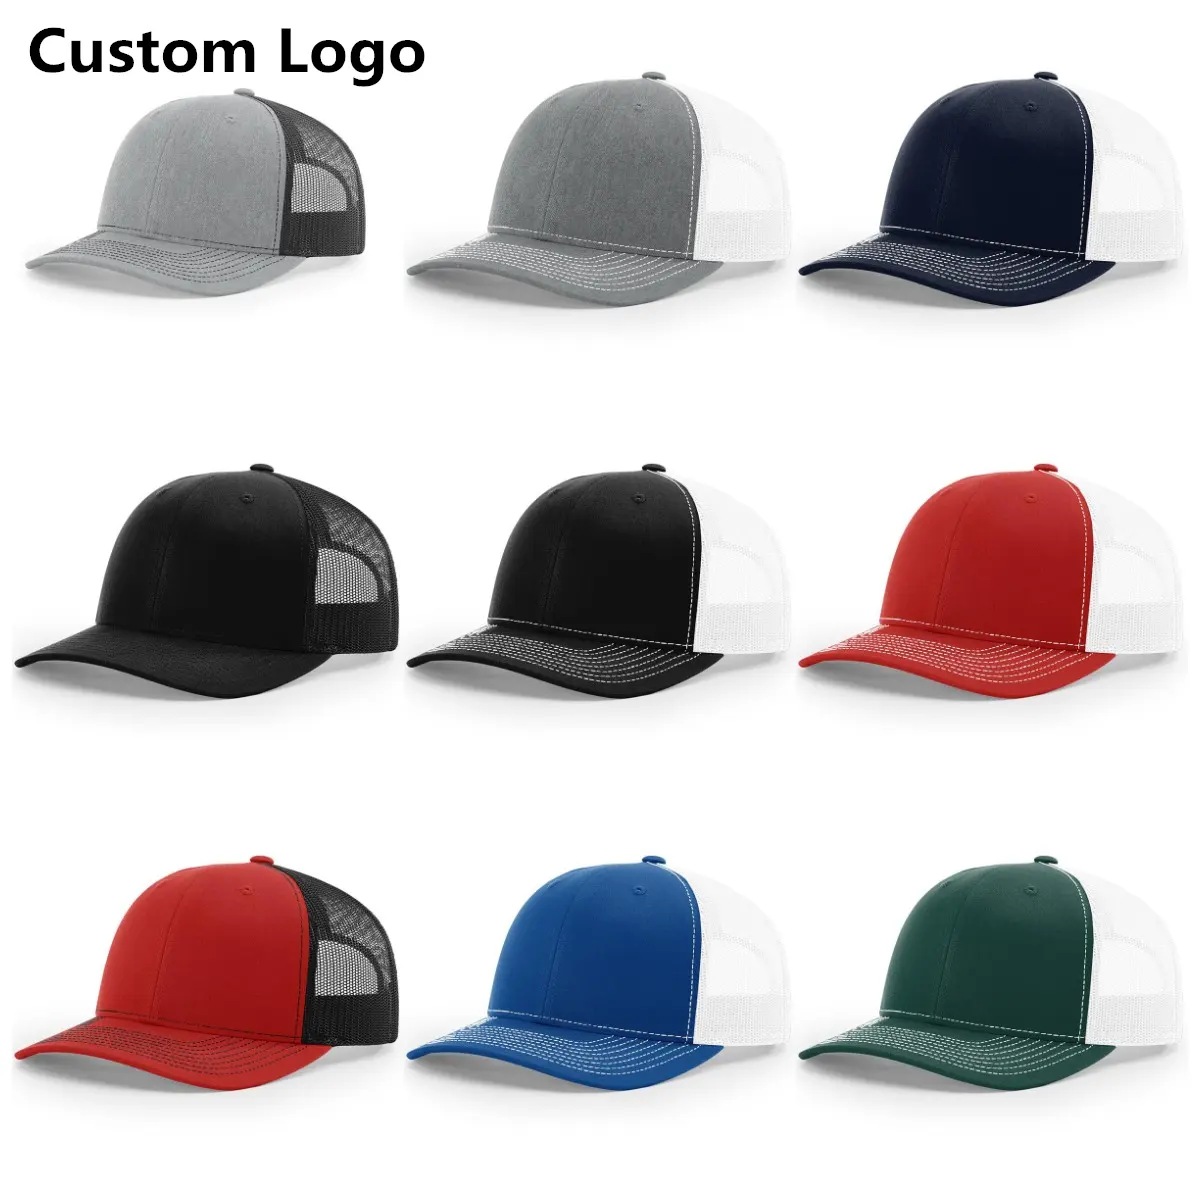 Logo personnalisé unisexe vierge richarsson forme 112 chapeau de camionneur casquette en maille casquette unie pour hommes visière Snapback chapeau